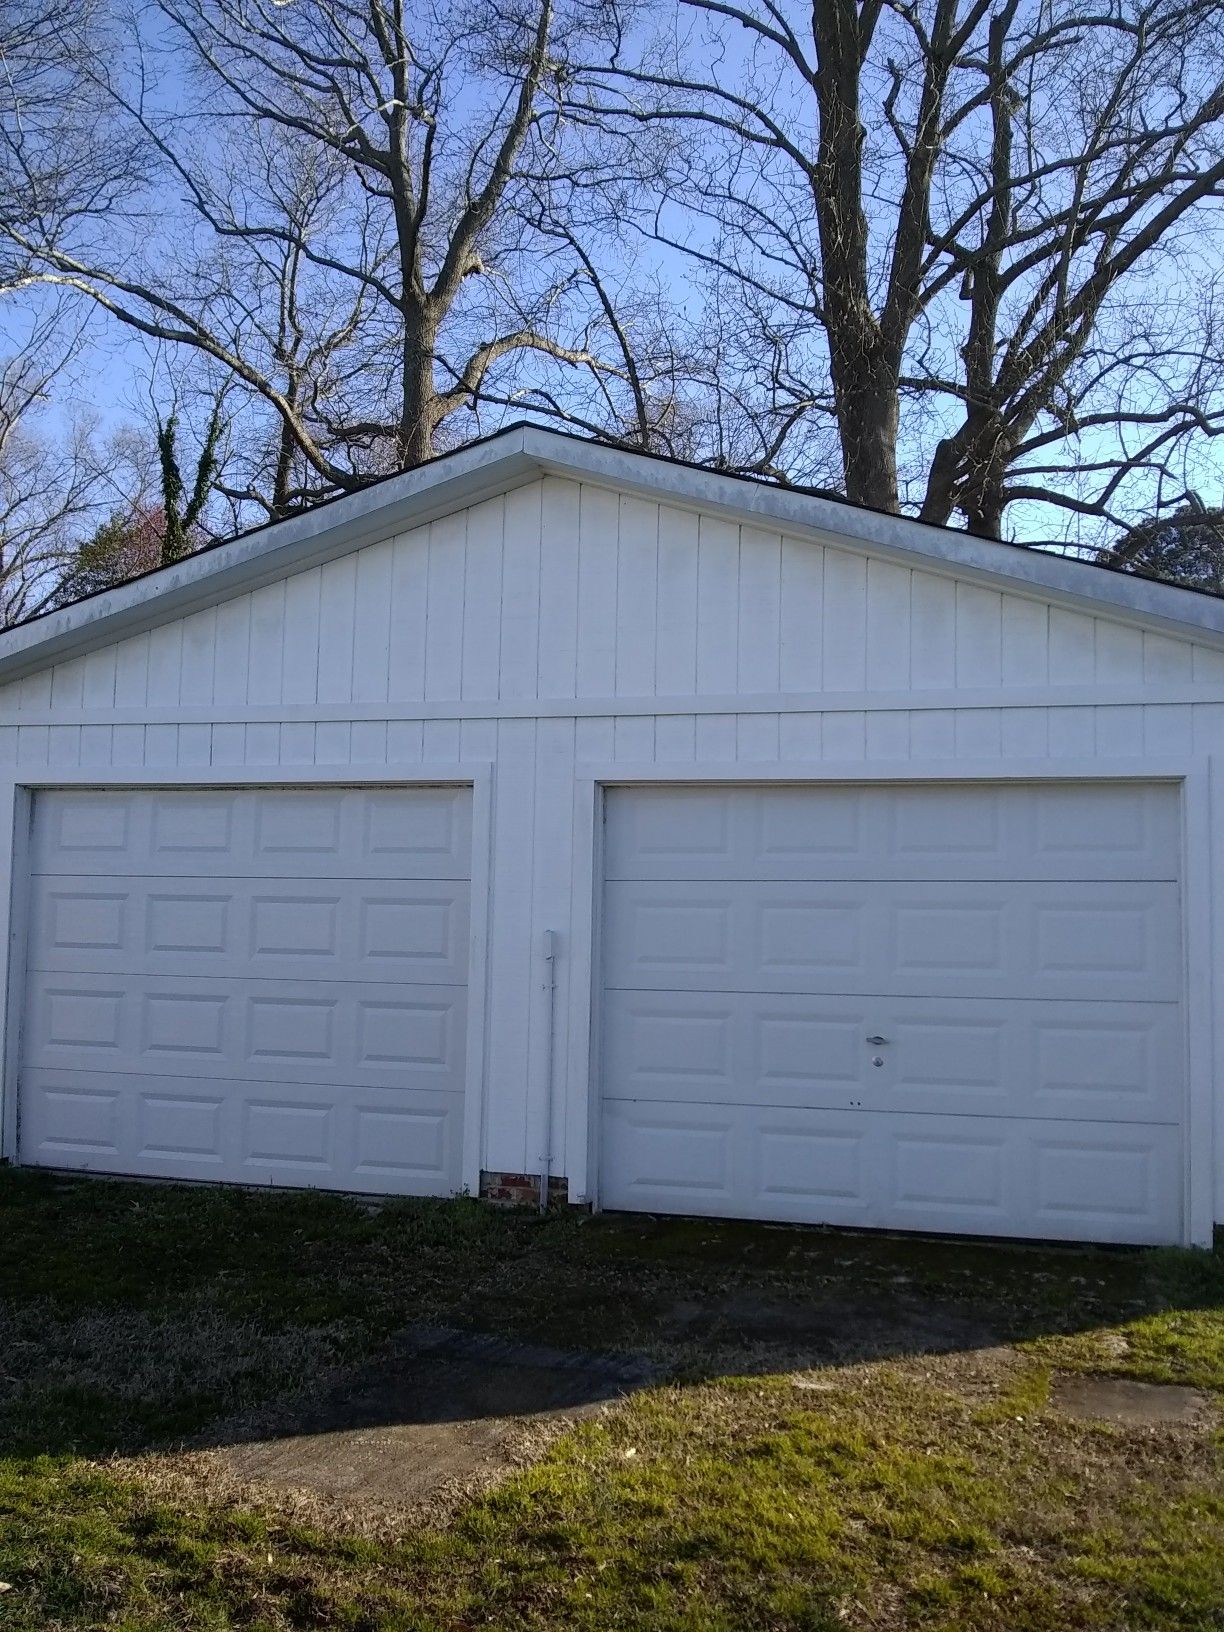 Two garage door price for each